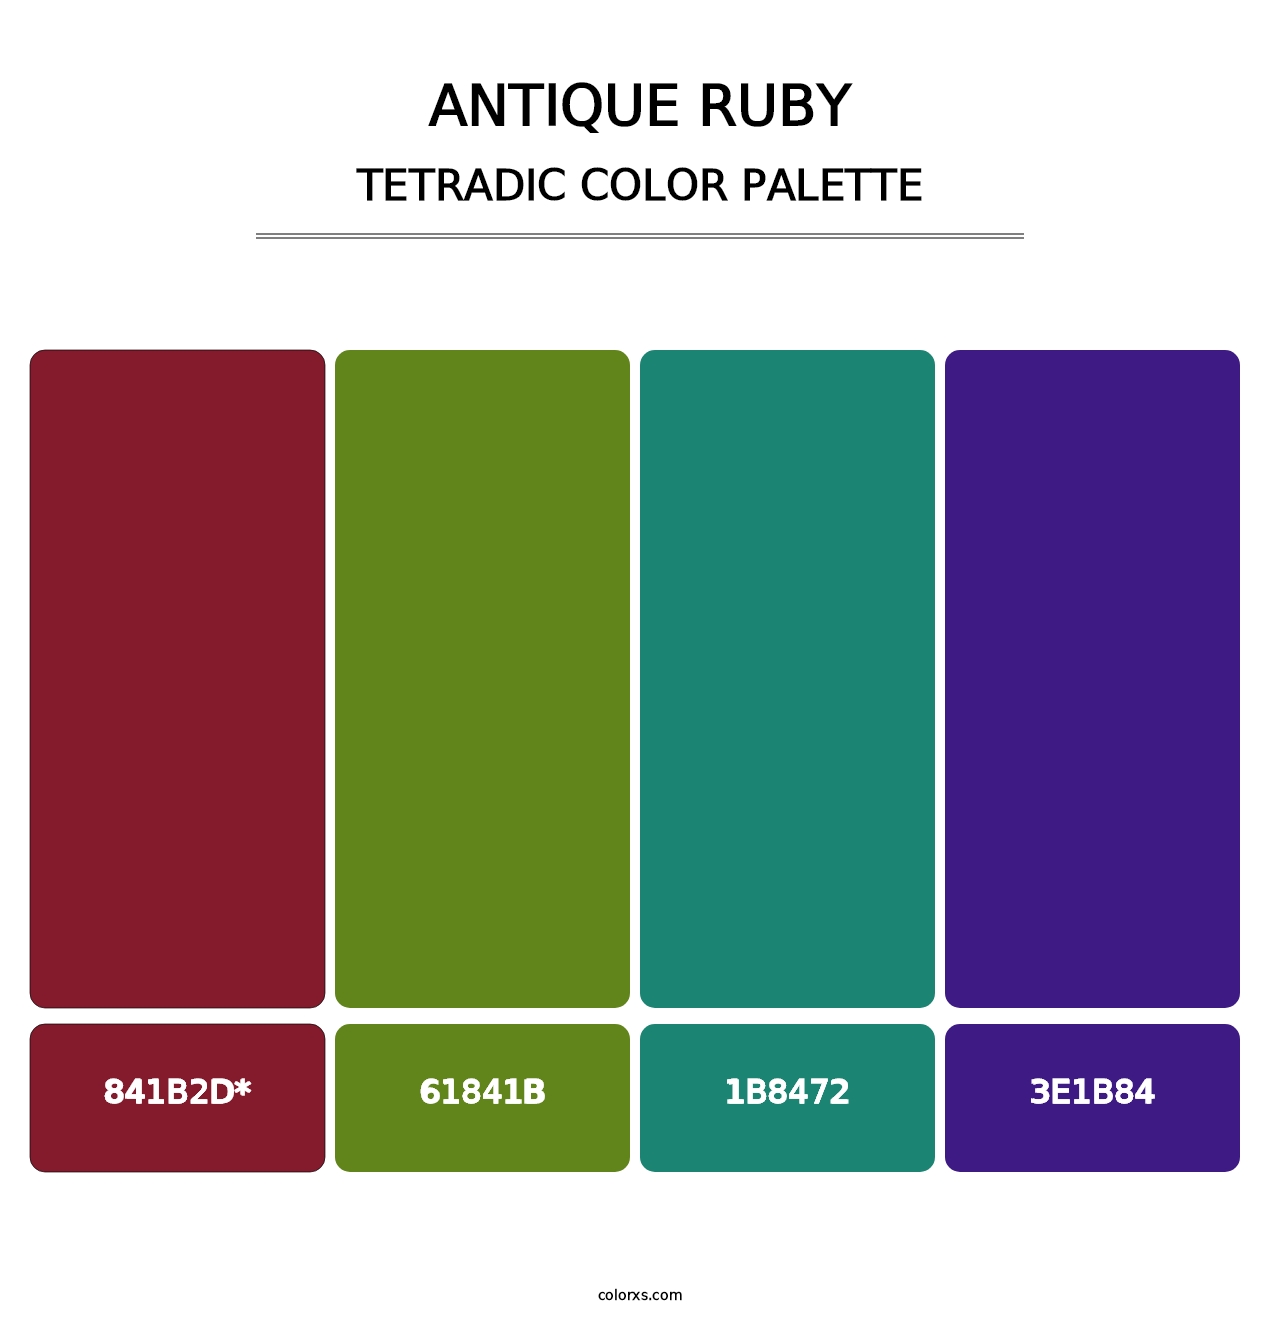 Antique Ruby - Tetradic Color Palette